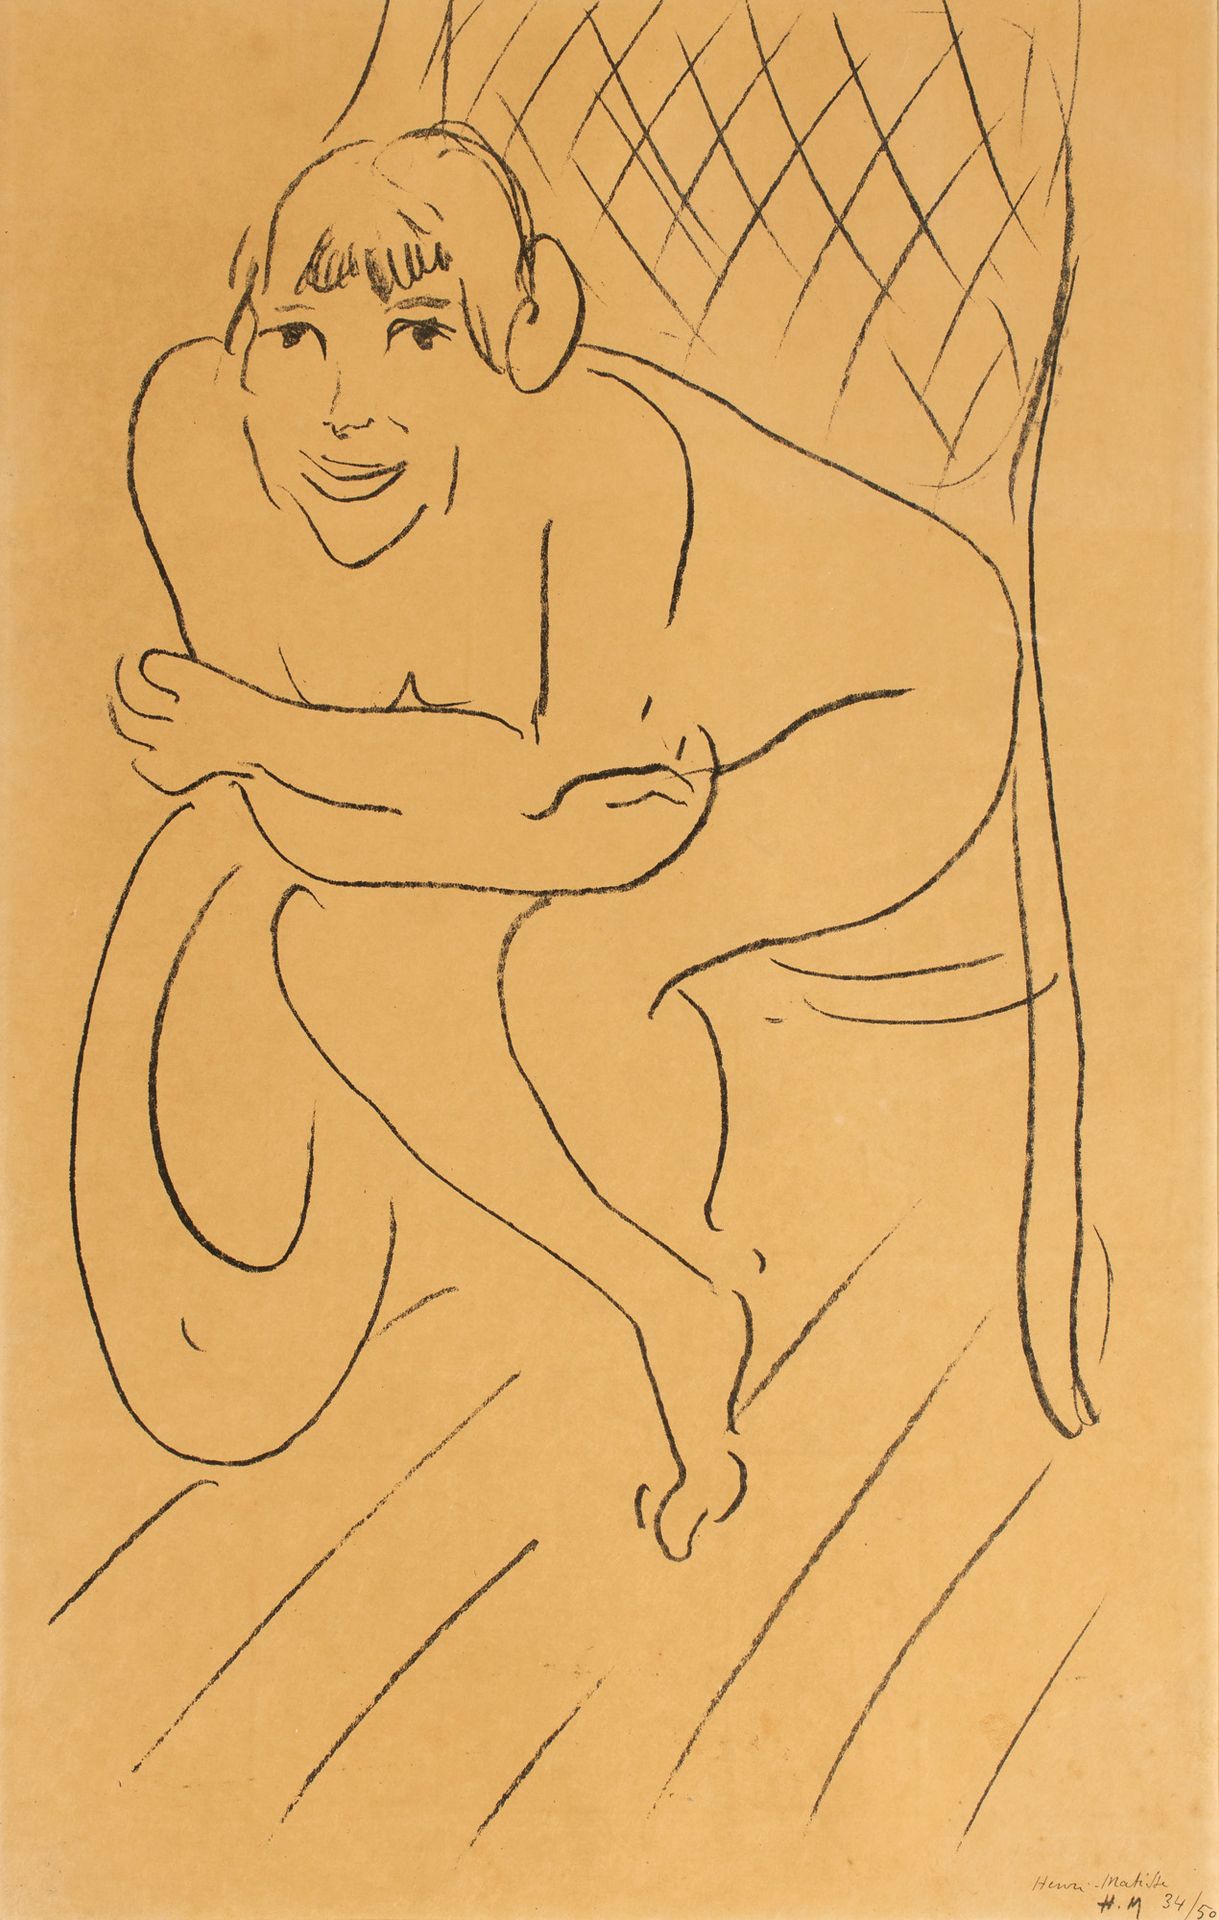 Henri MATISSE (1869-1954) Henri MATISSE (1869-1954)

Nude with Rocking Chair, 19&hellip;